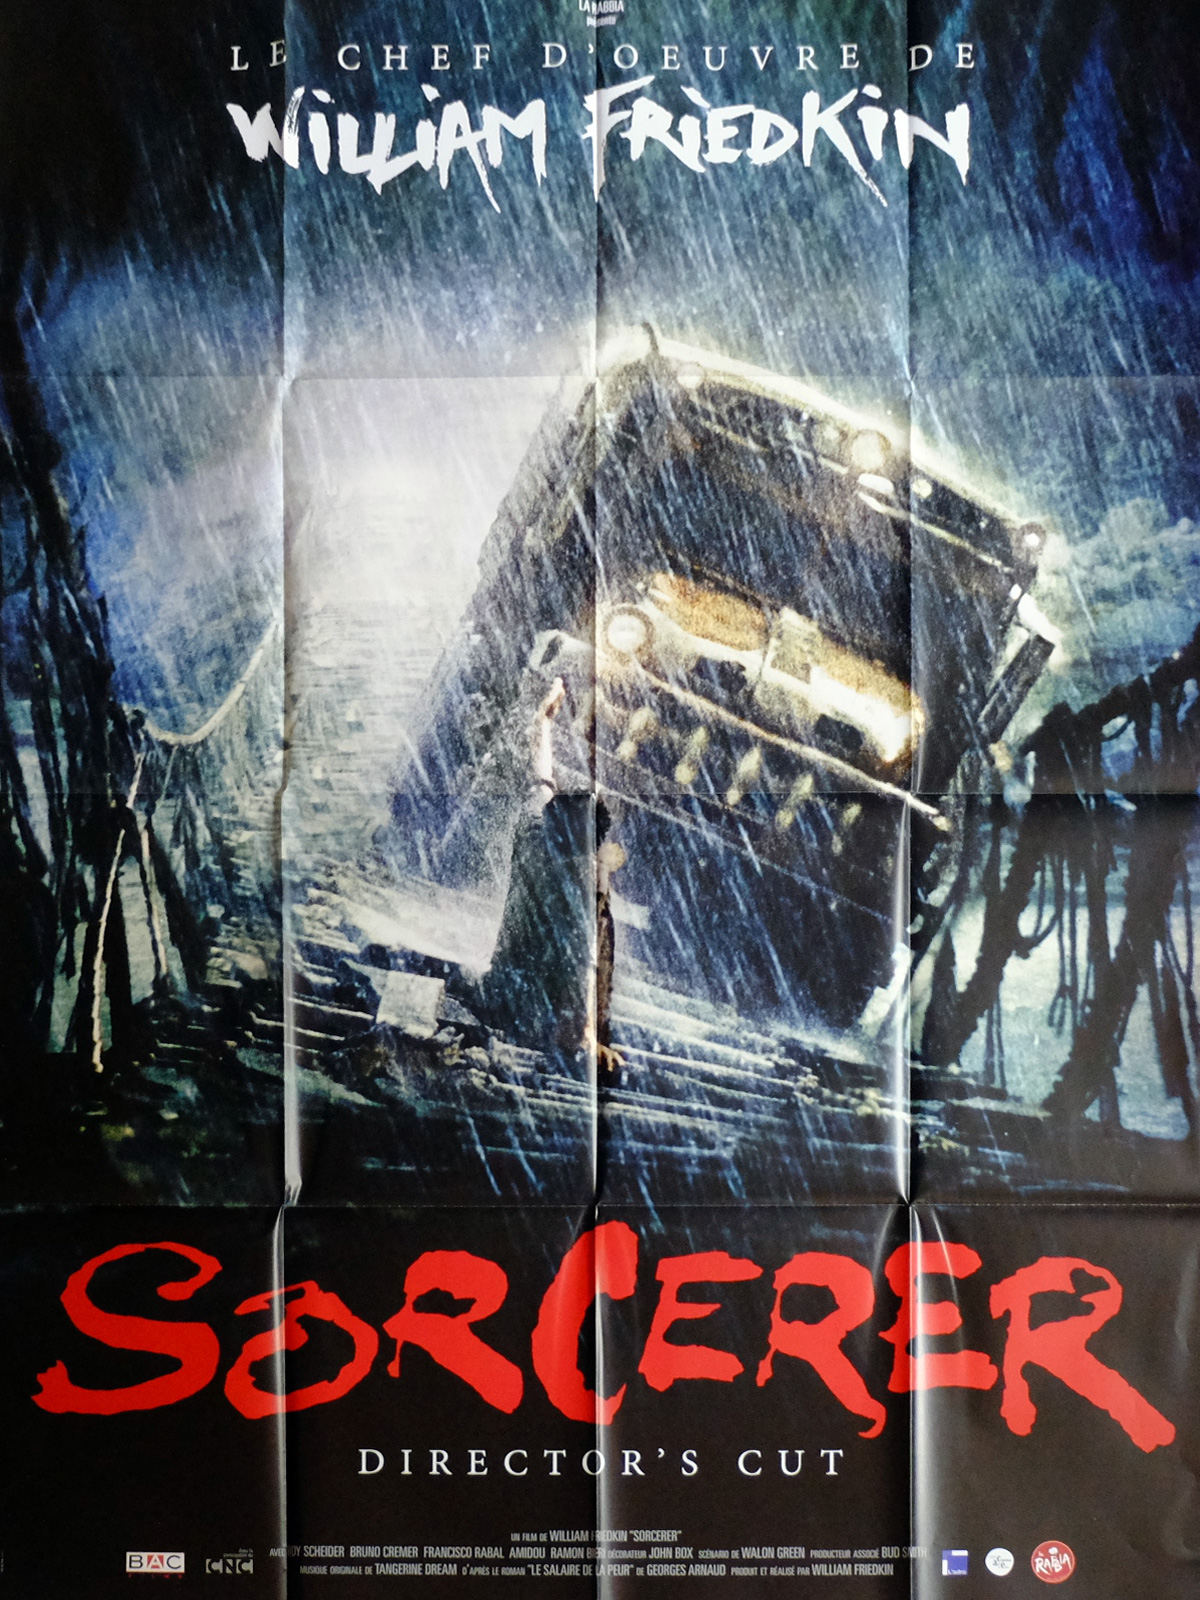 sorcerer-movie-poster-47x63-in-french-r2015-william-friedkin-roy-sheider.jpg